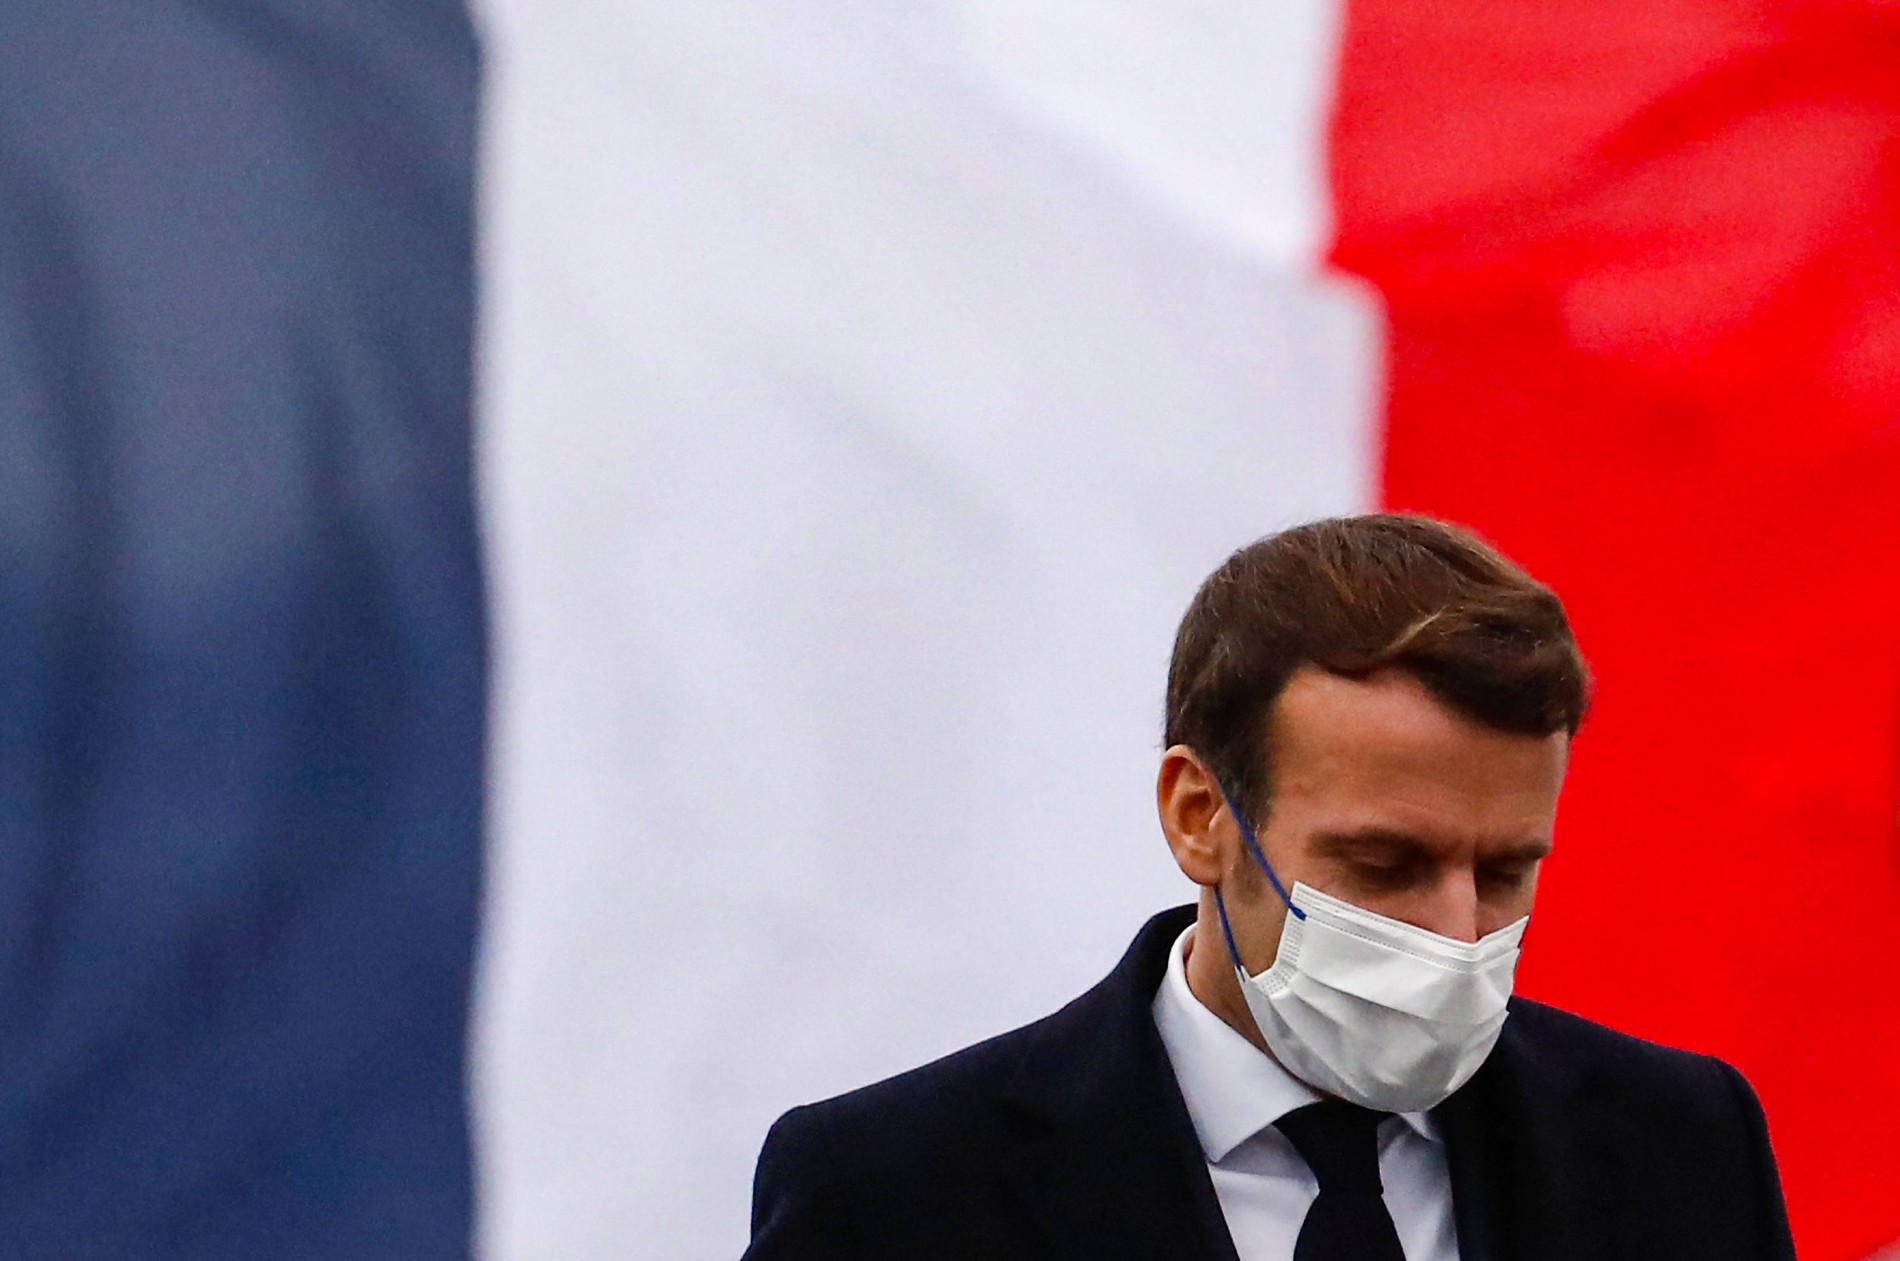 مكافحة الإرهاب ـ مخططات إرهابية ضد الرئيس الفرنسي "ماكرون"